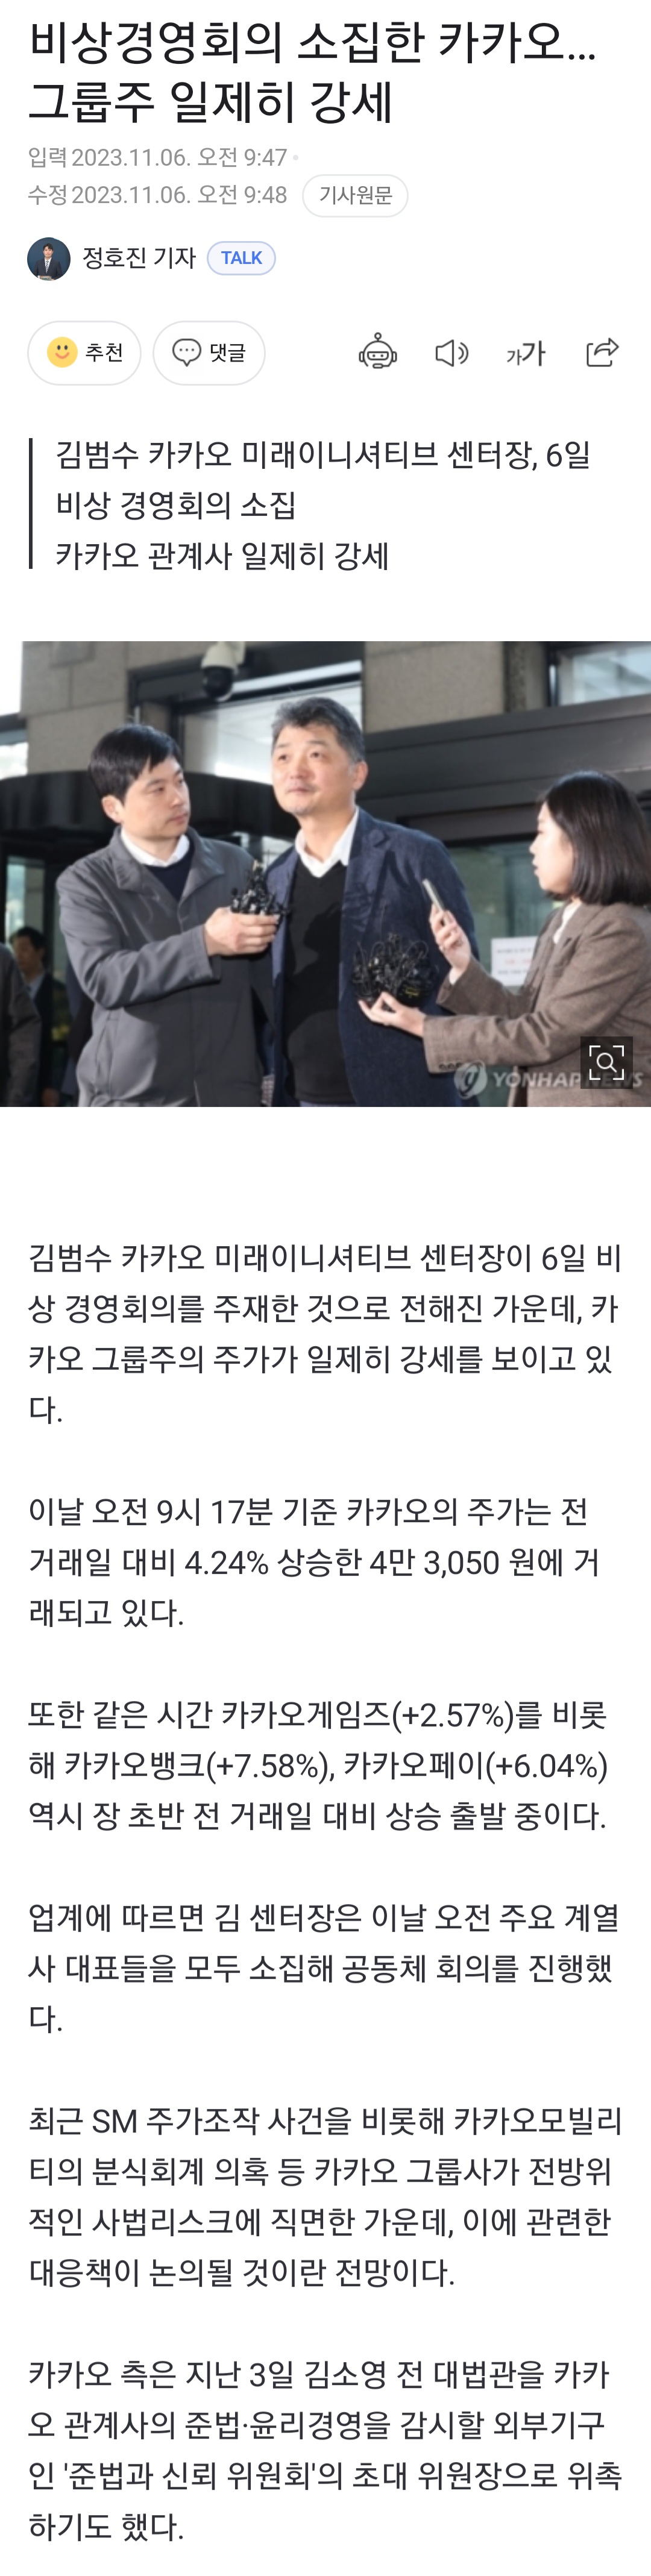 [정보/소식] 비상경영회의 소집한 카카오…그룹주 일제히 강세 | 인스티즈